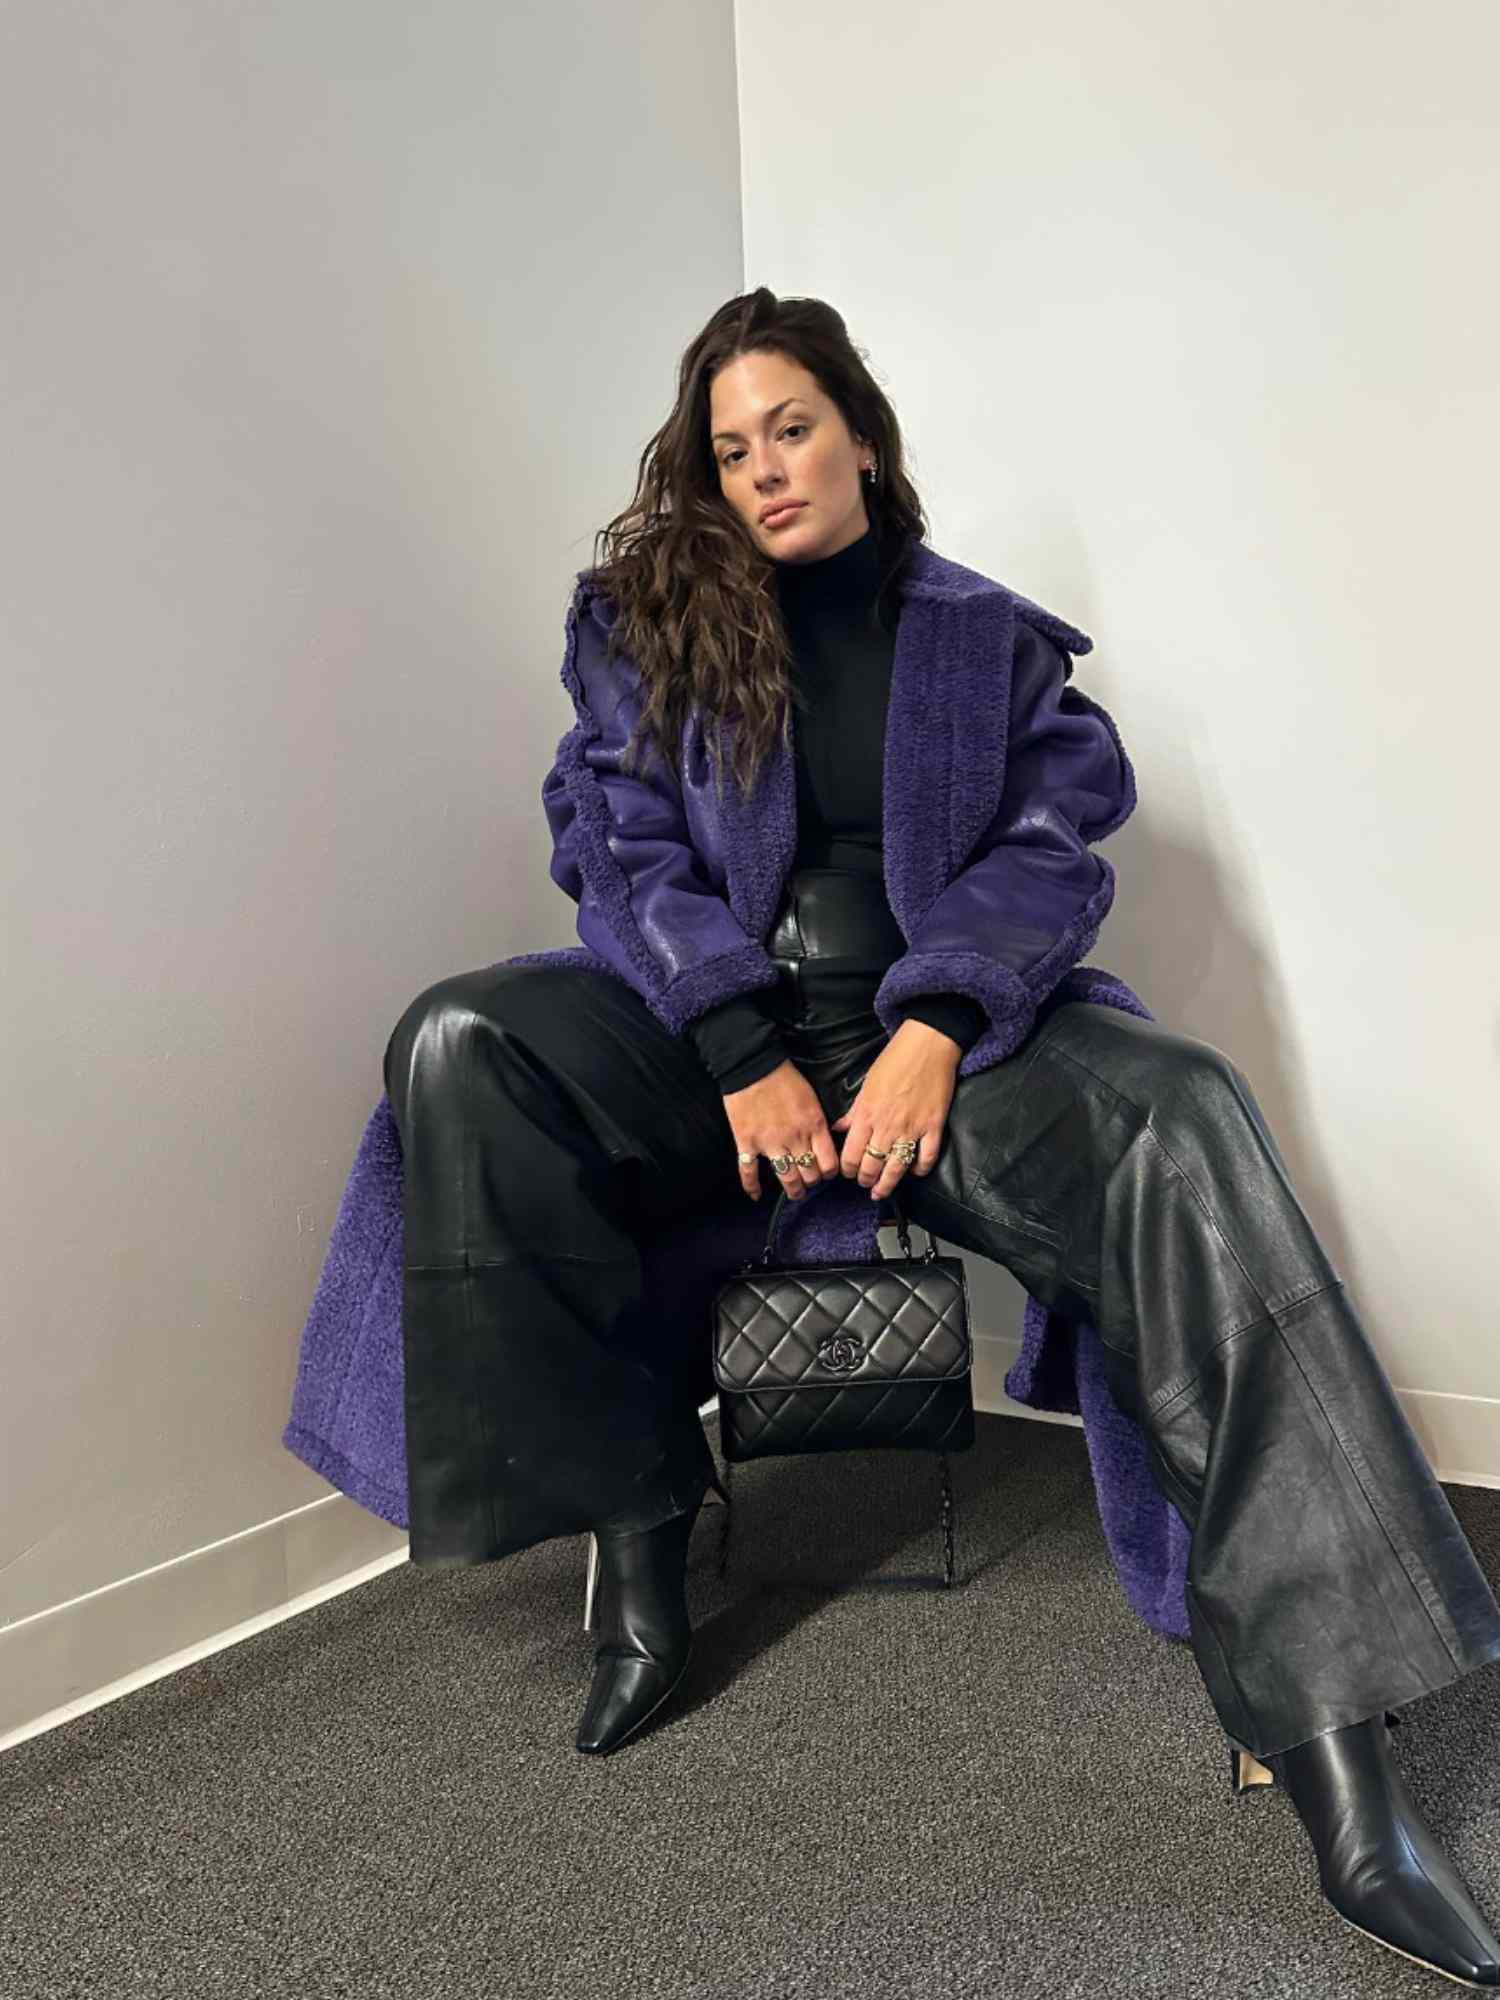 Ashley Graham segura uma bolsa Chanel preta acolchoada enquanto veste um casaco de pele roxo, calça preta com detalhes em couro, gola alta preta e botas pretas